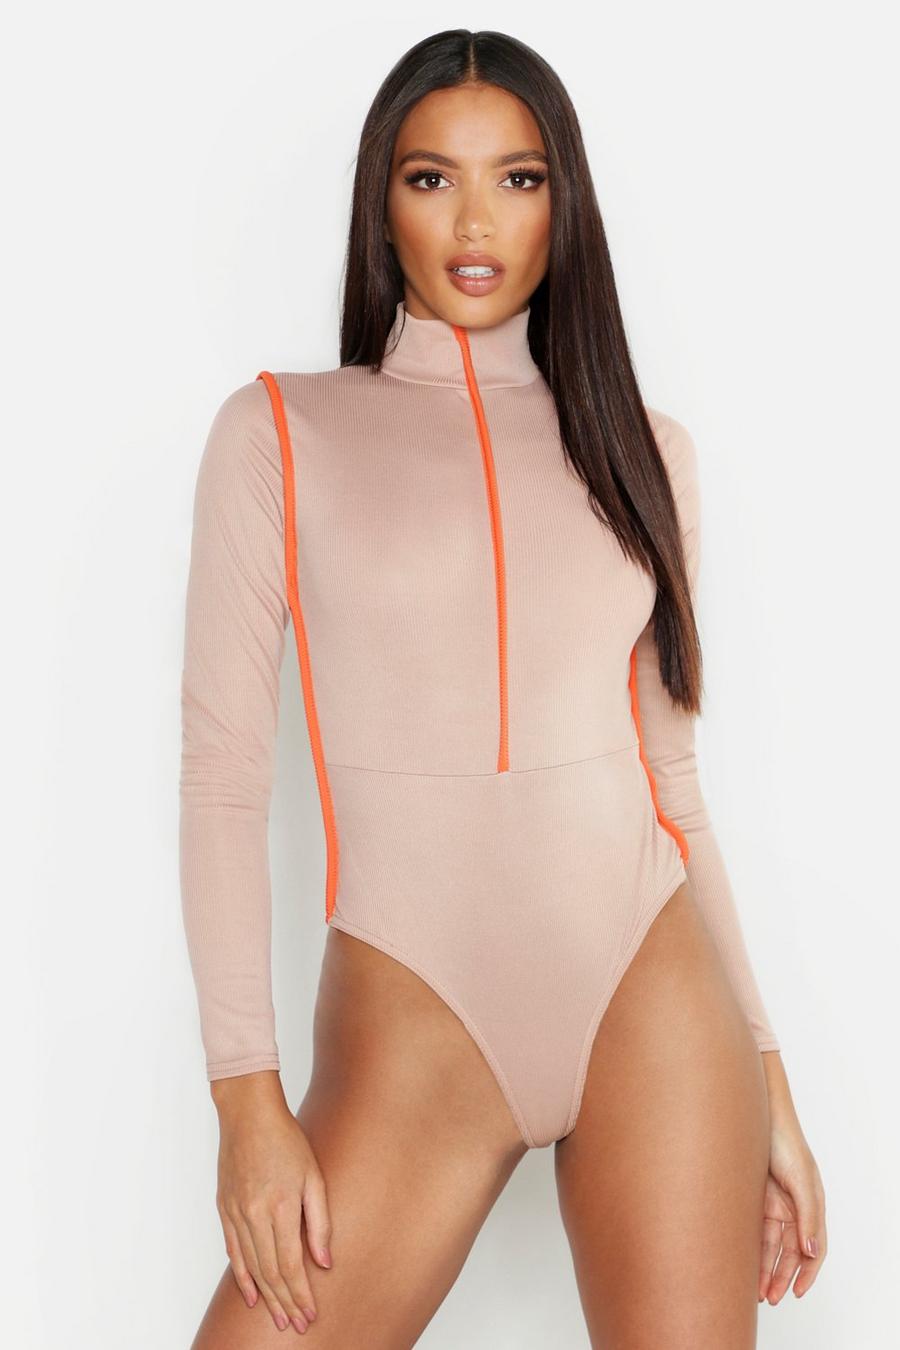 Gerippter, langärmeliger Bodysuit in Neonfarben mit Sportstreifen, Sand image number 1